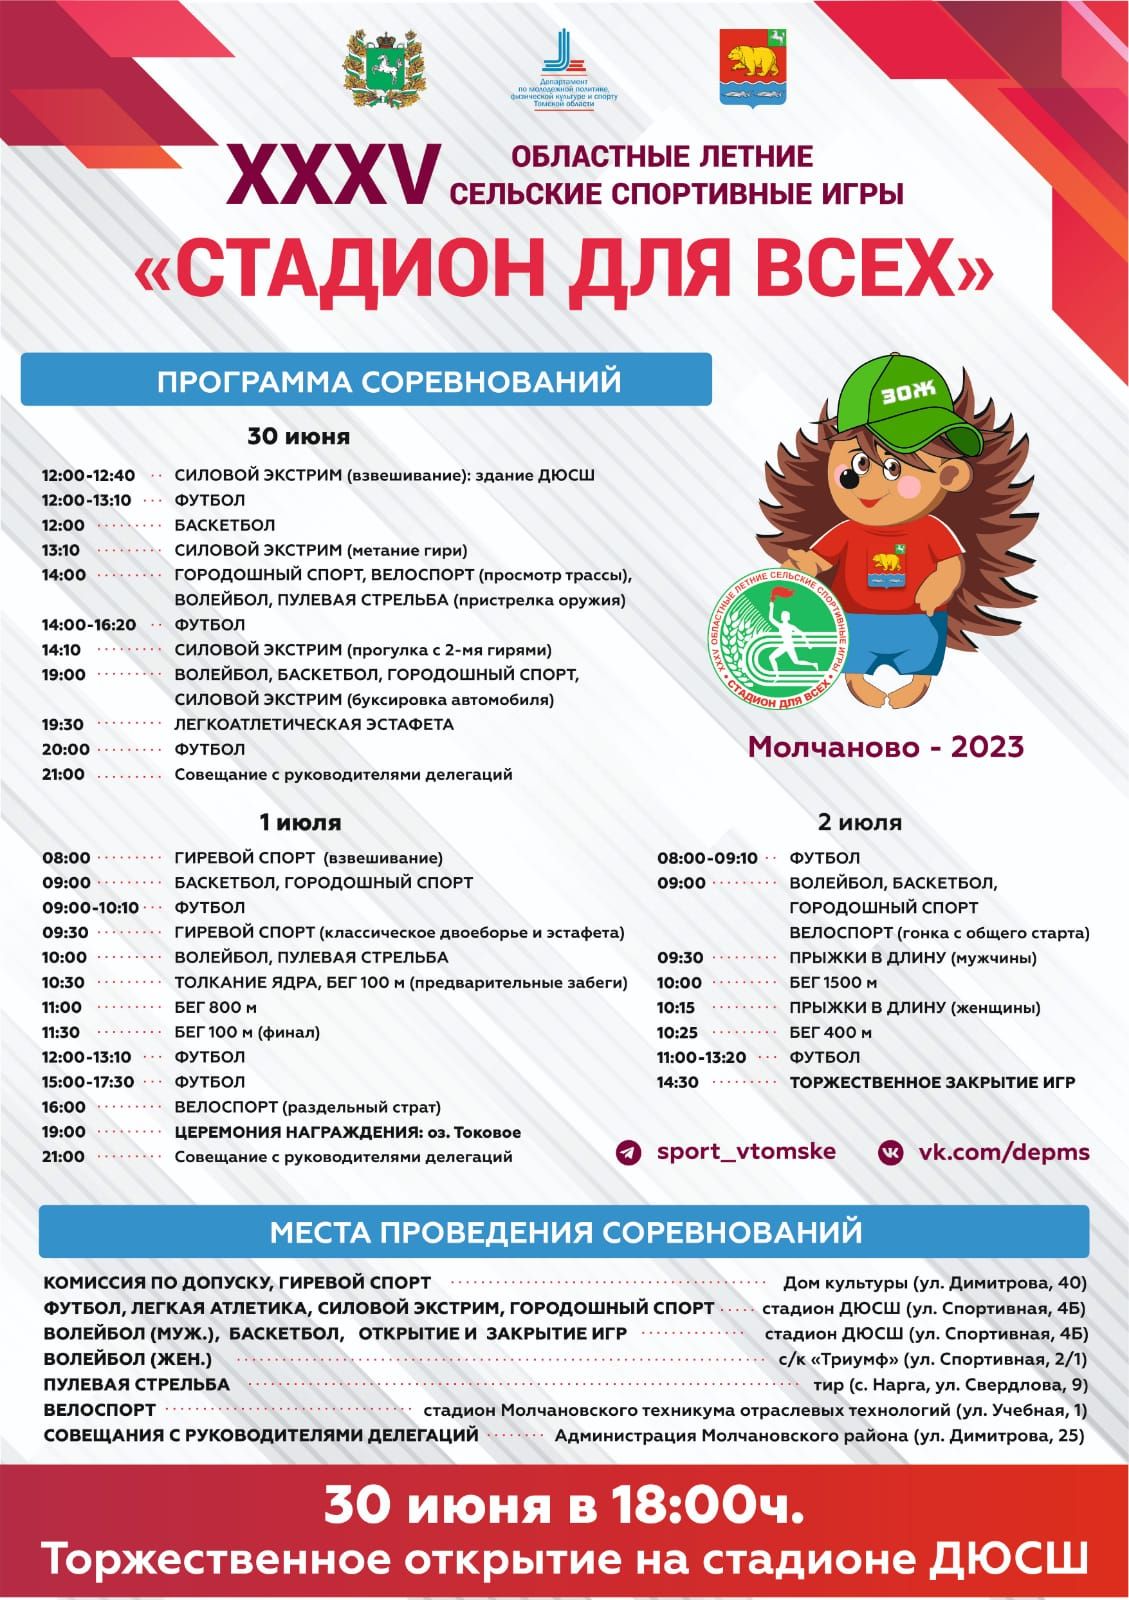 С 30 июня по 2 июля 2023 г. в с. Молчаново будут проводиться Областные летние сельские спортивные игры